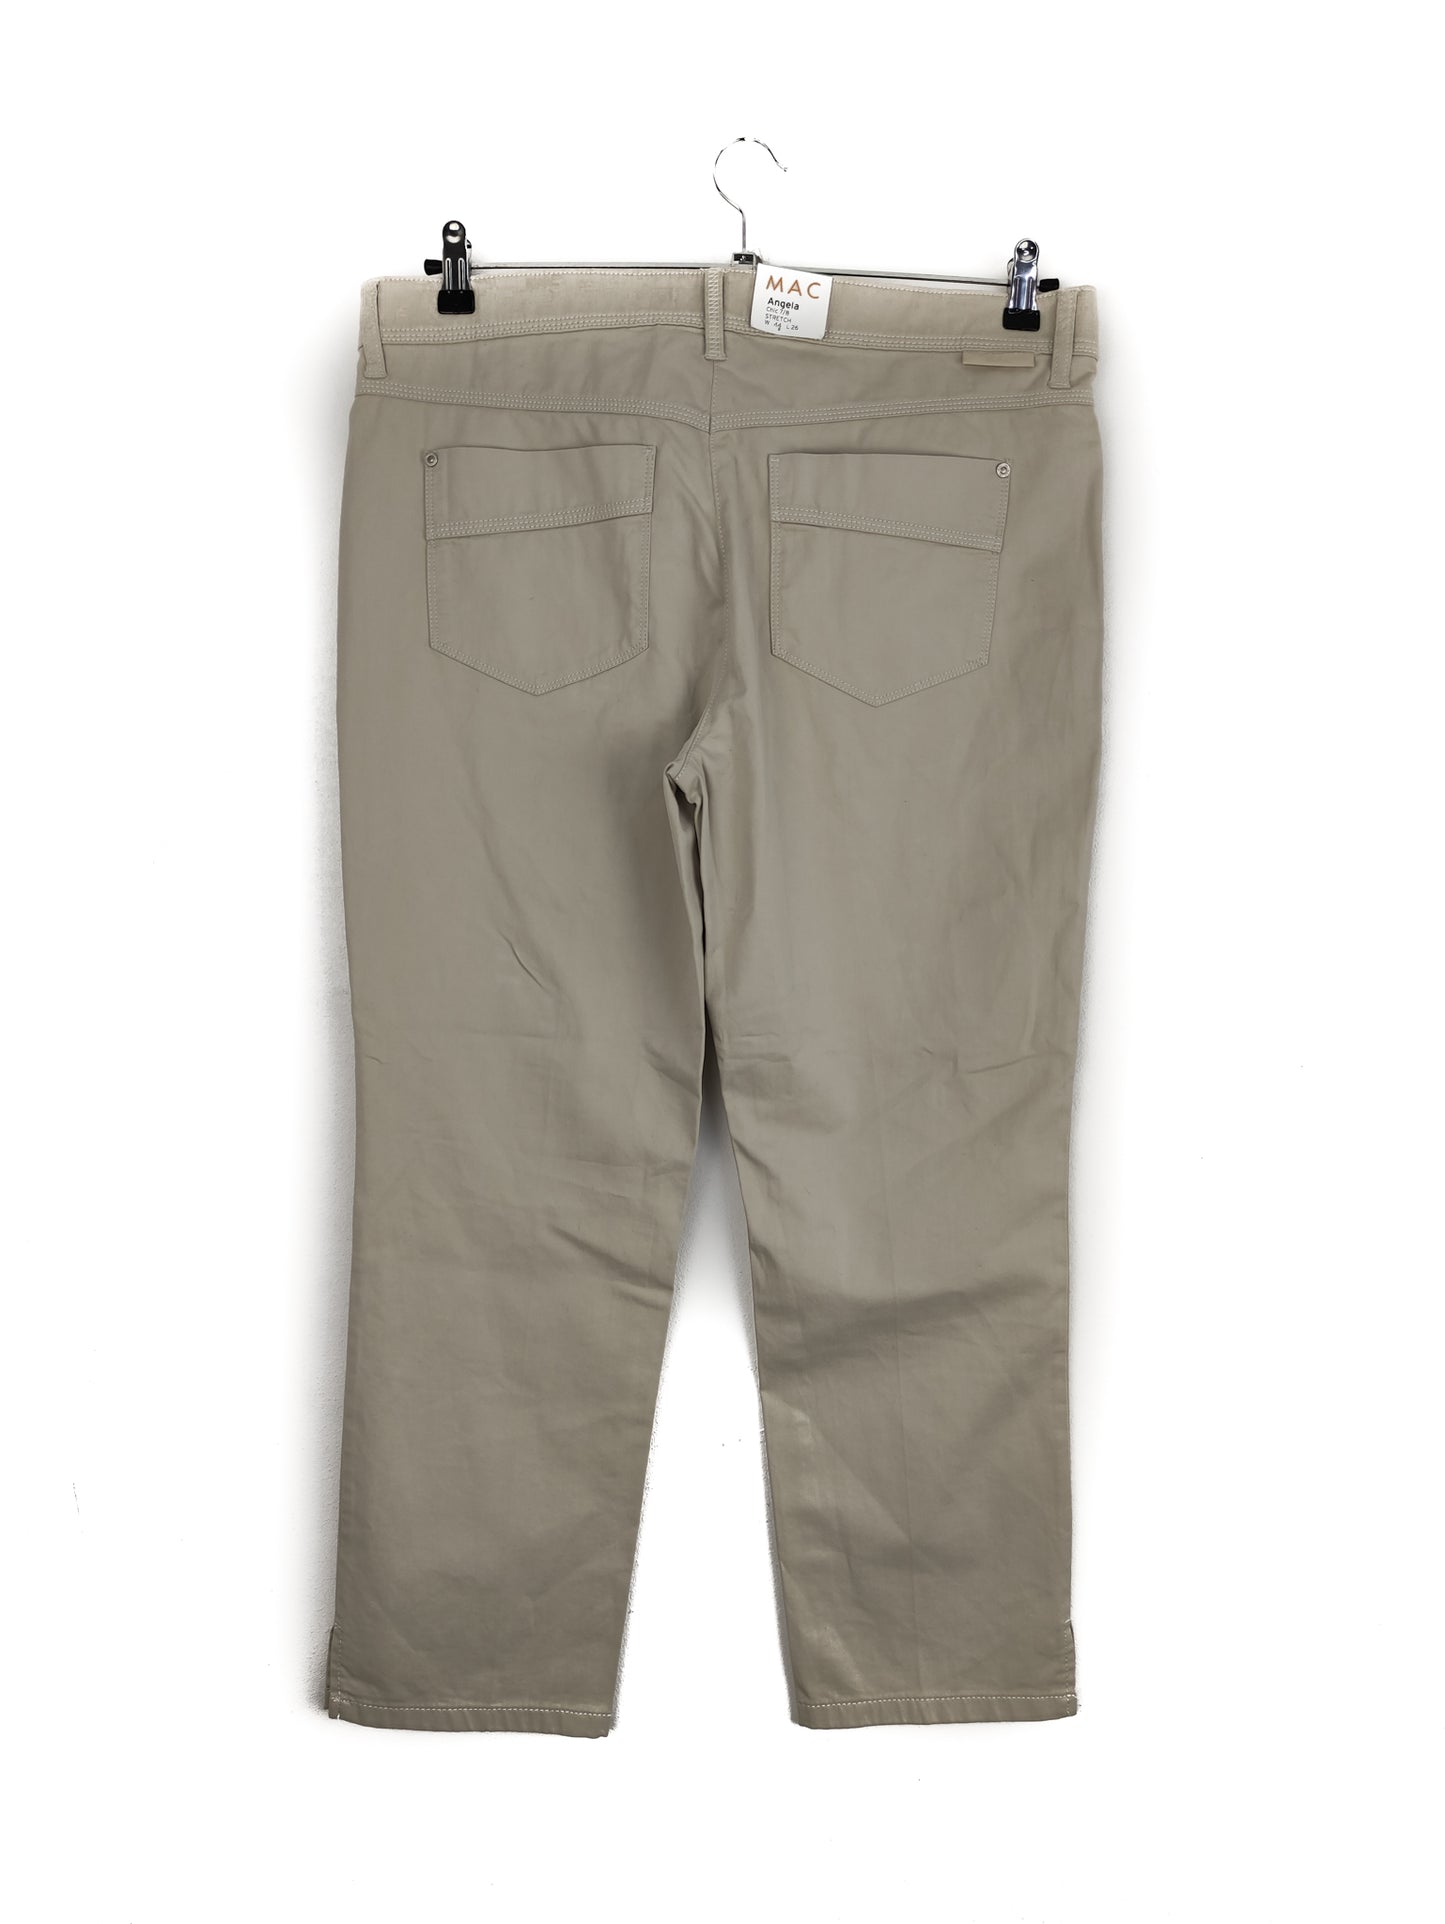 Stock Γυναικείο Παντελόνι Tζιν MAC σε Μπεζ Χρώμα (XL)